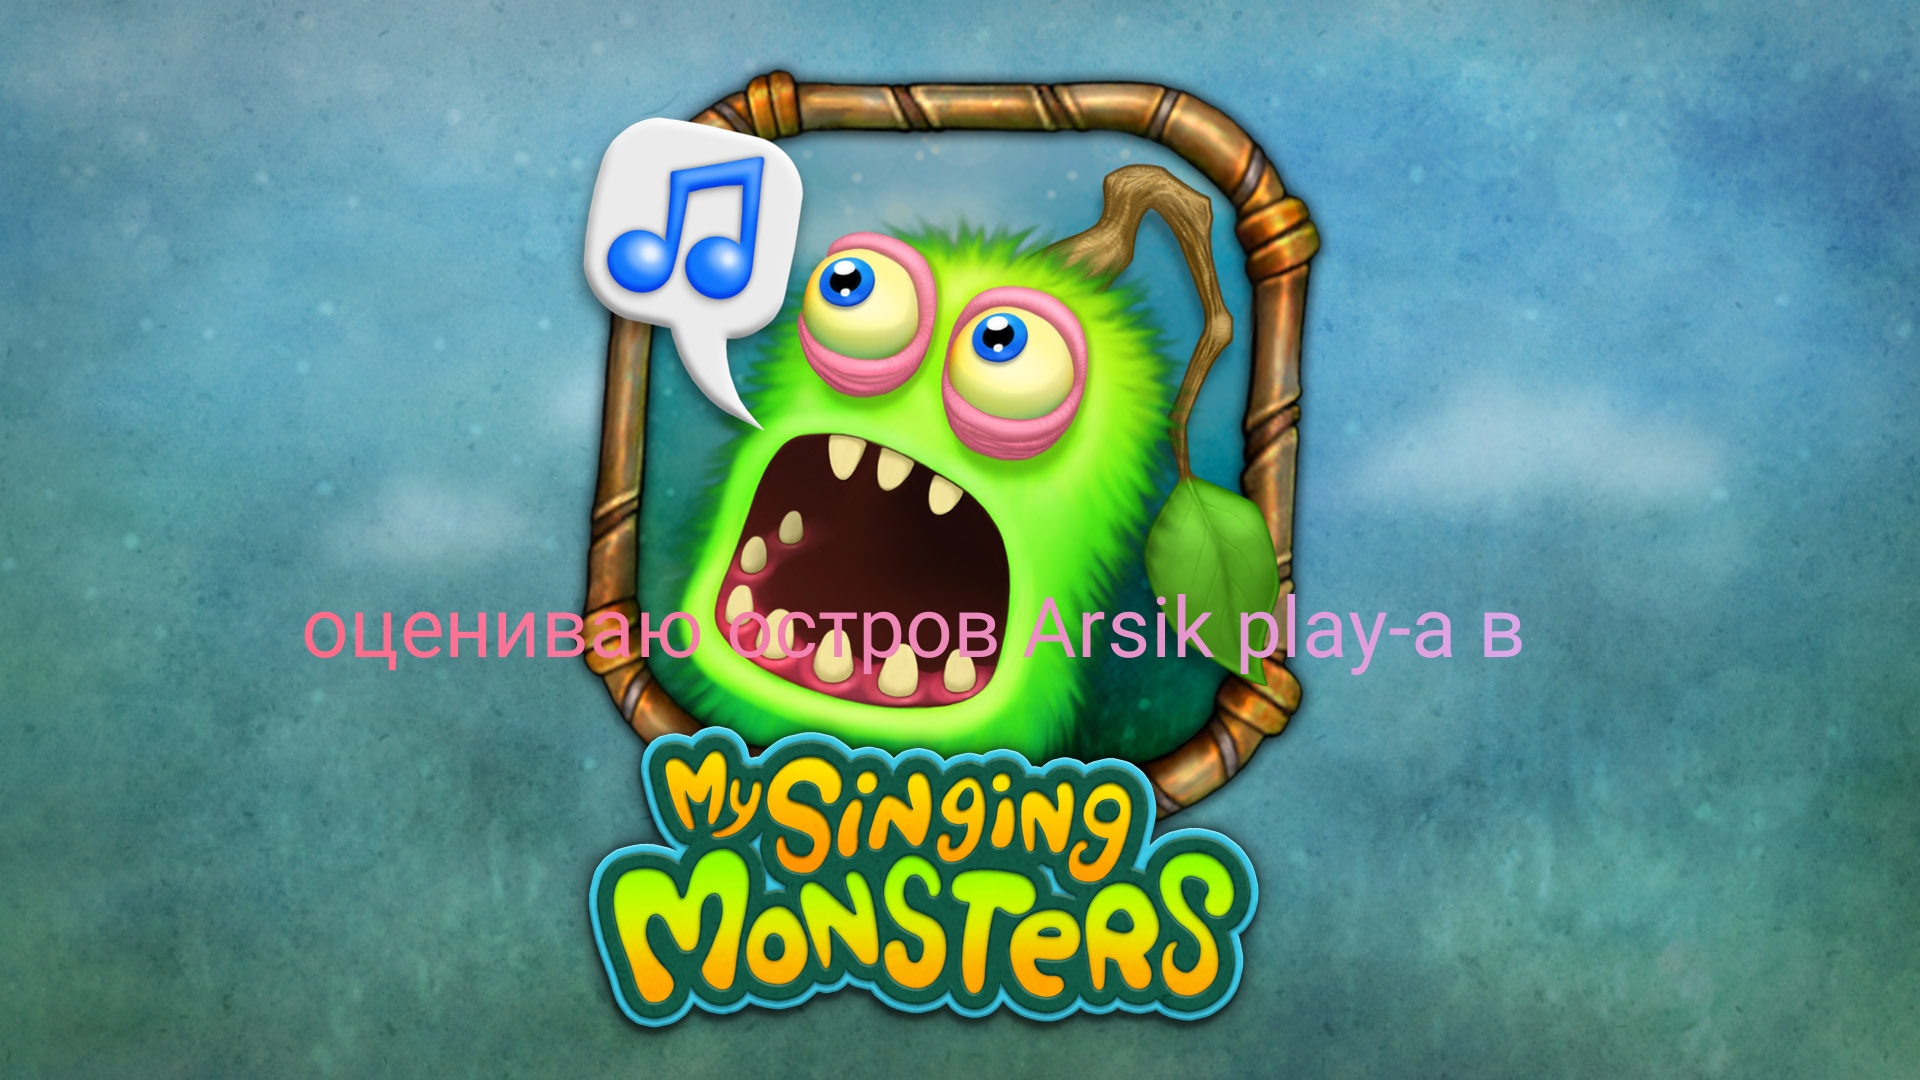 Оцениваю остров блогера Arsik play в My Singing Monsters